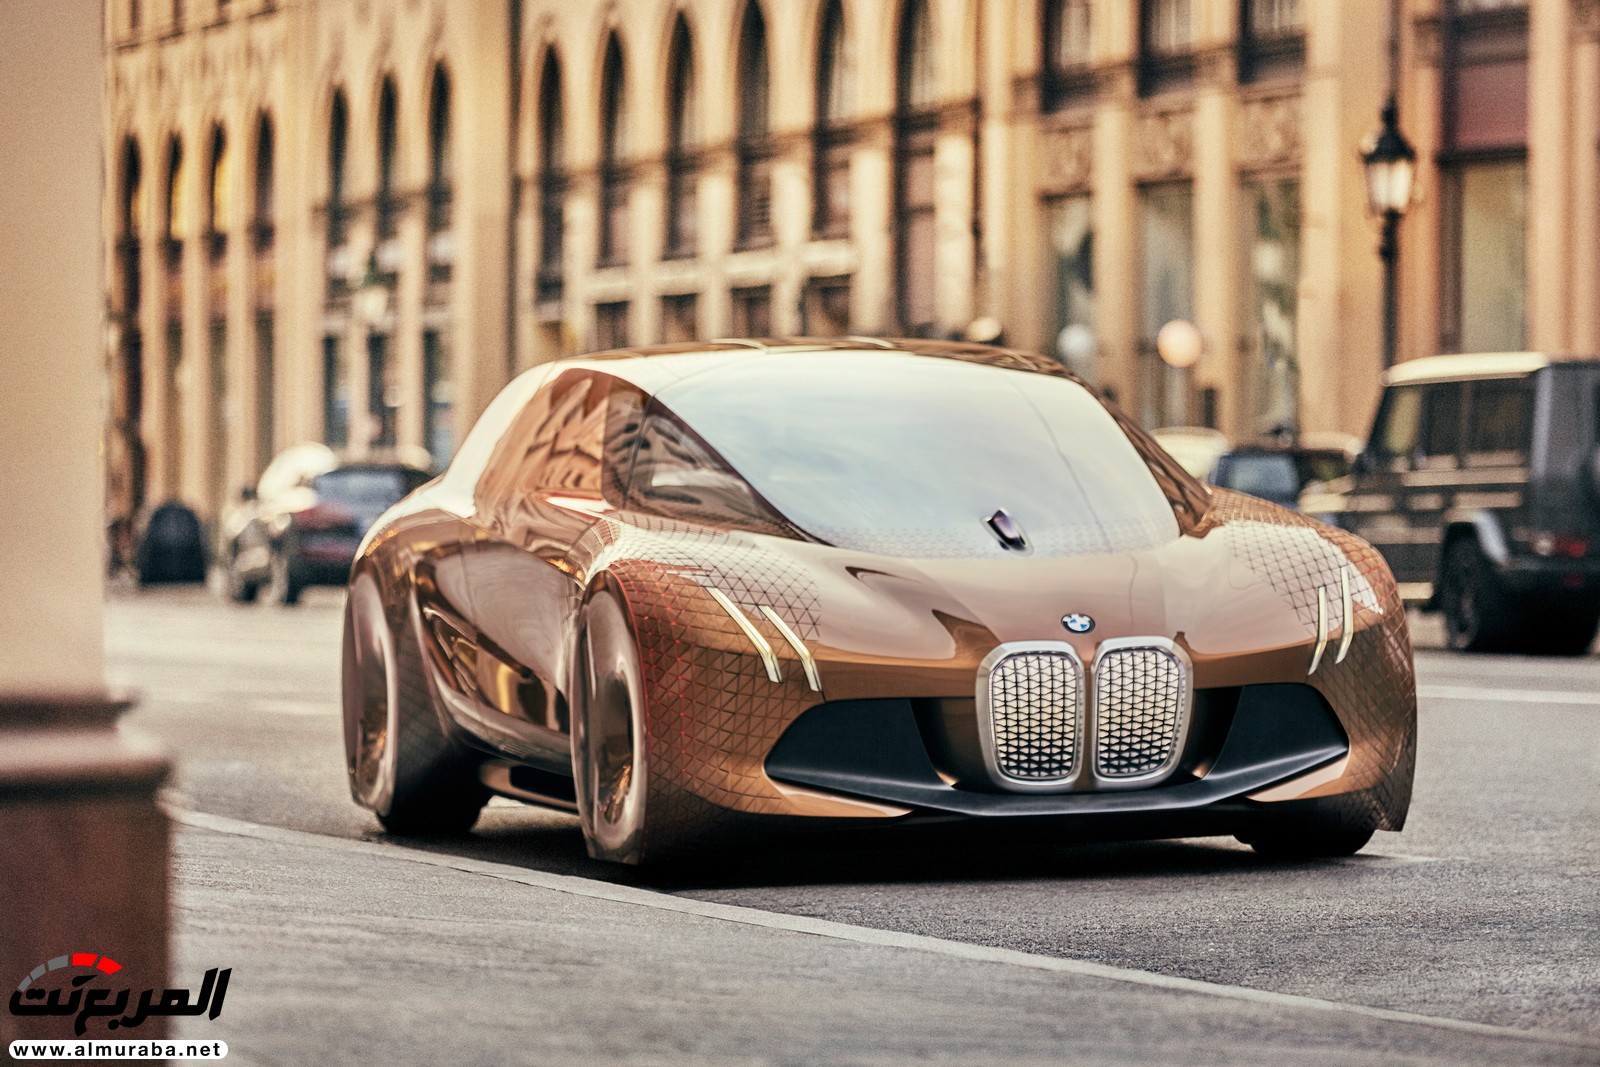 أكثر تقنيات القيادة الذاتية تقدما من "بي إم دبليو" ستتوفر بكافة موديلاتها بالمستقبل BMW 14